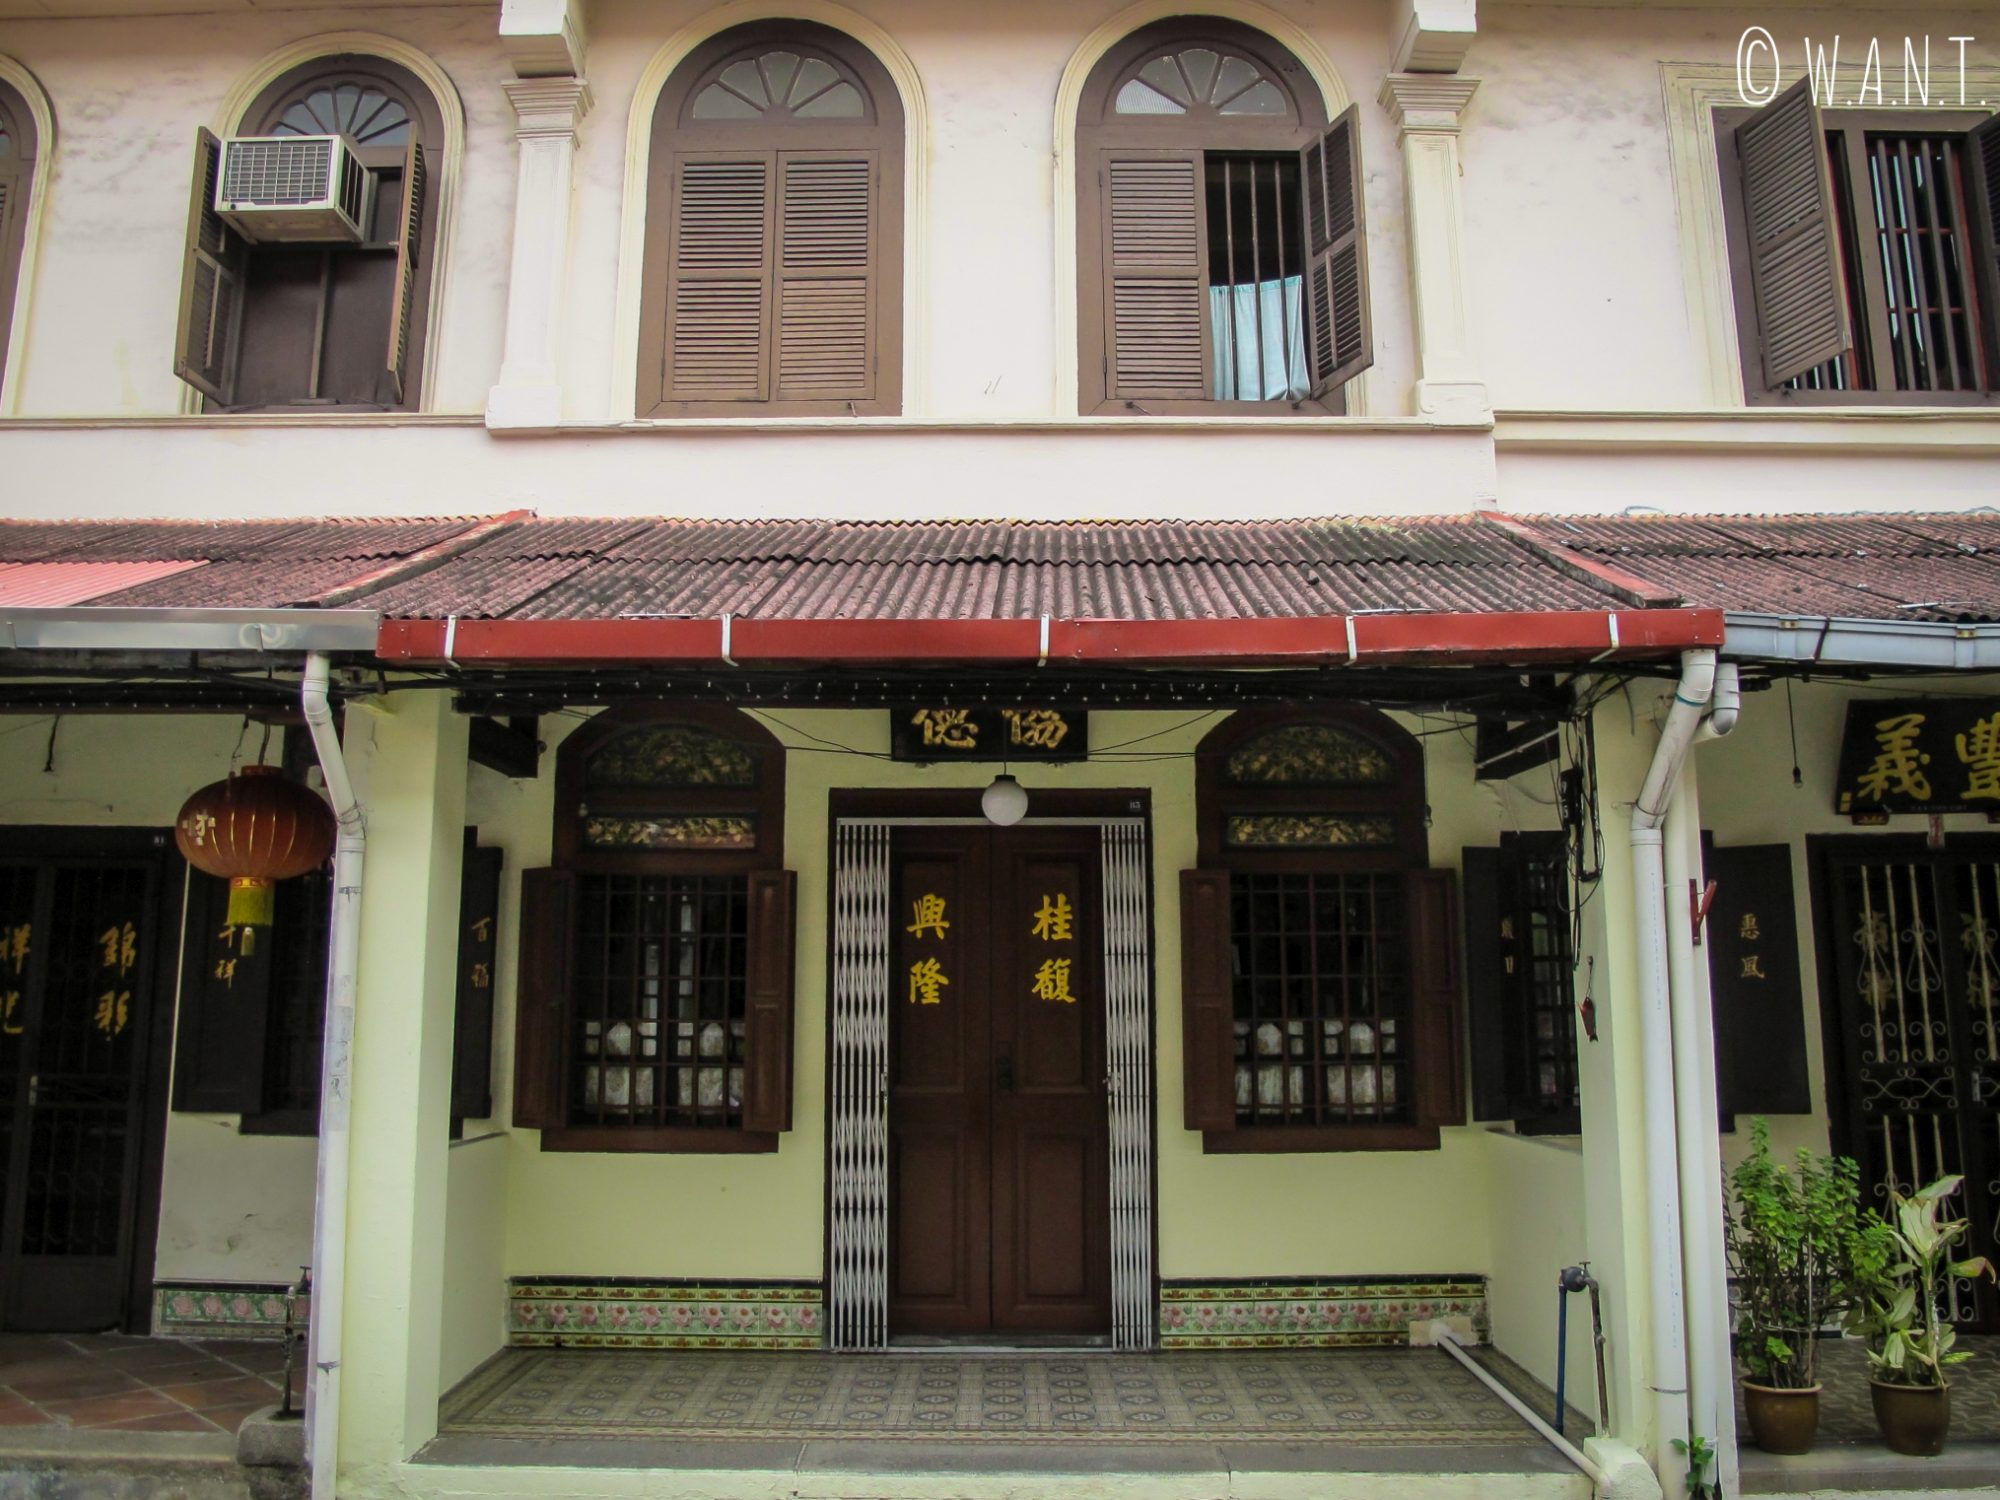 Façade de maison dans le quartier de Chinatown de Malacca